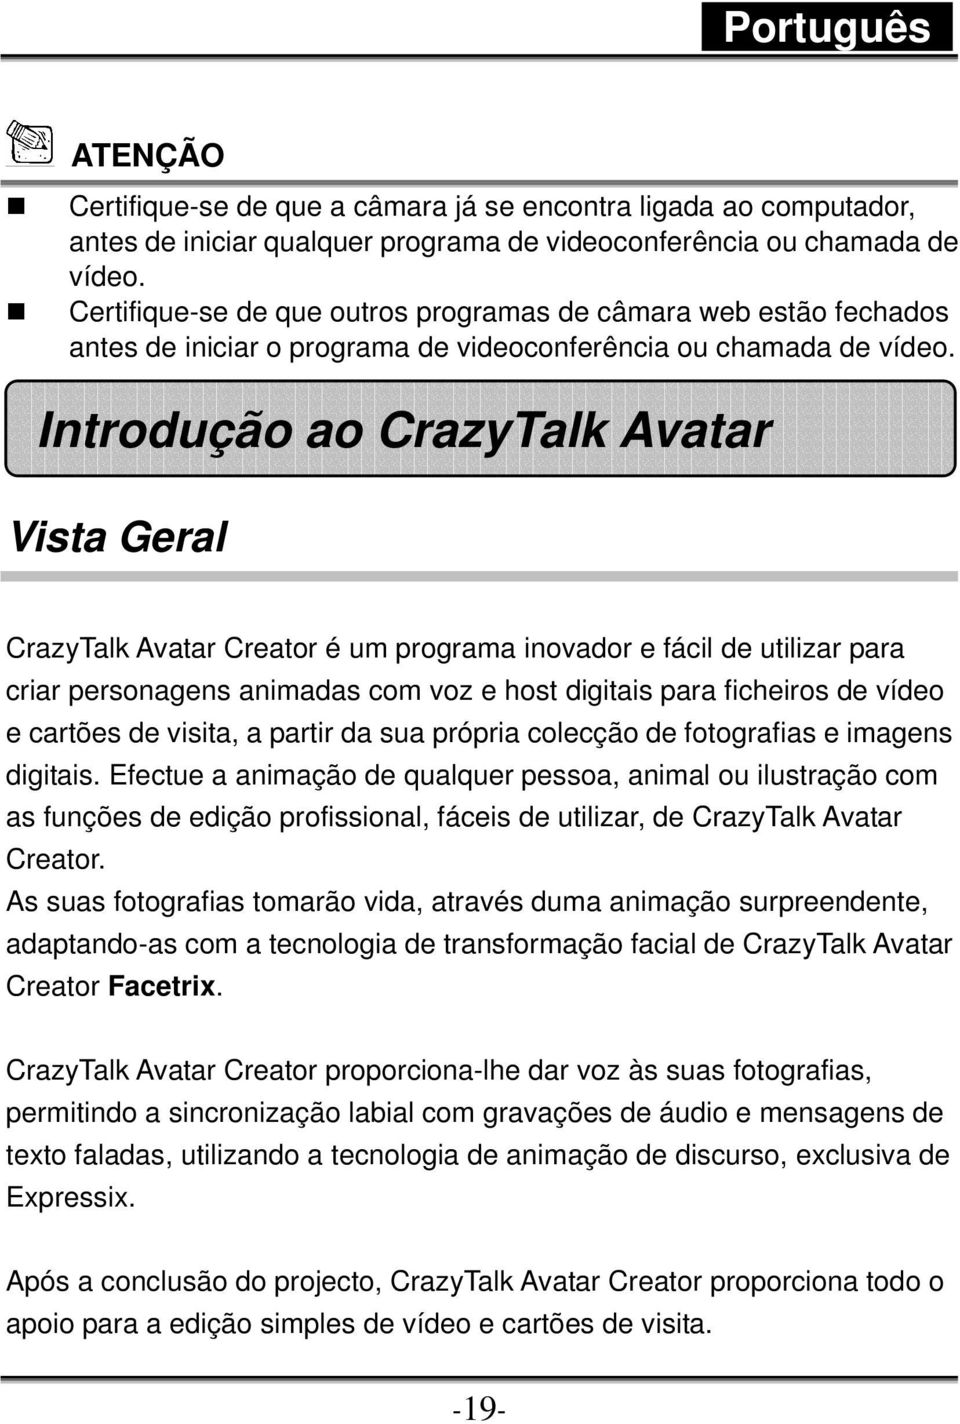 Introdução ao CrazyTalk Avatar Vista Geral CrazyTalk Avatar Creator é um programa inovador e fácil de utilizar para criar personagens animadas com voz e host digitais para ficheiros de vídeo e